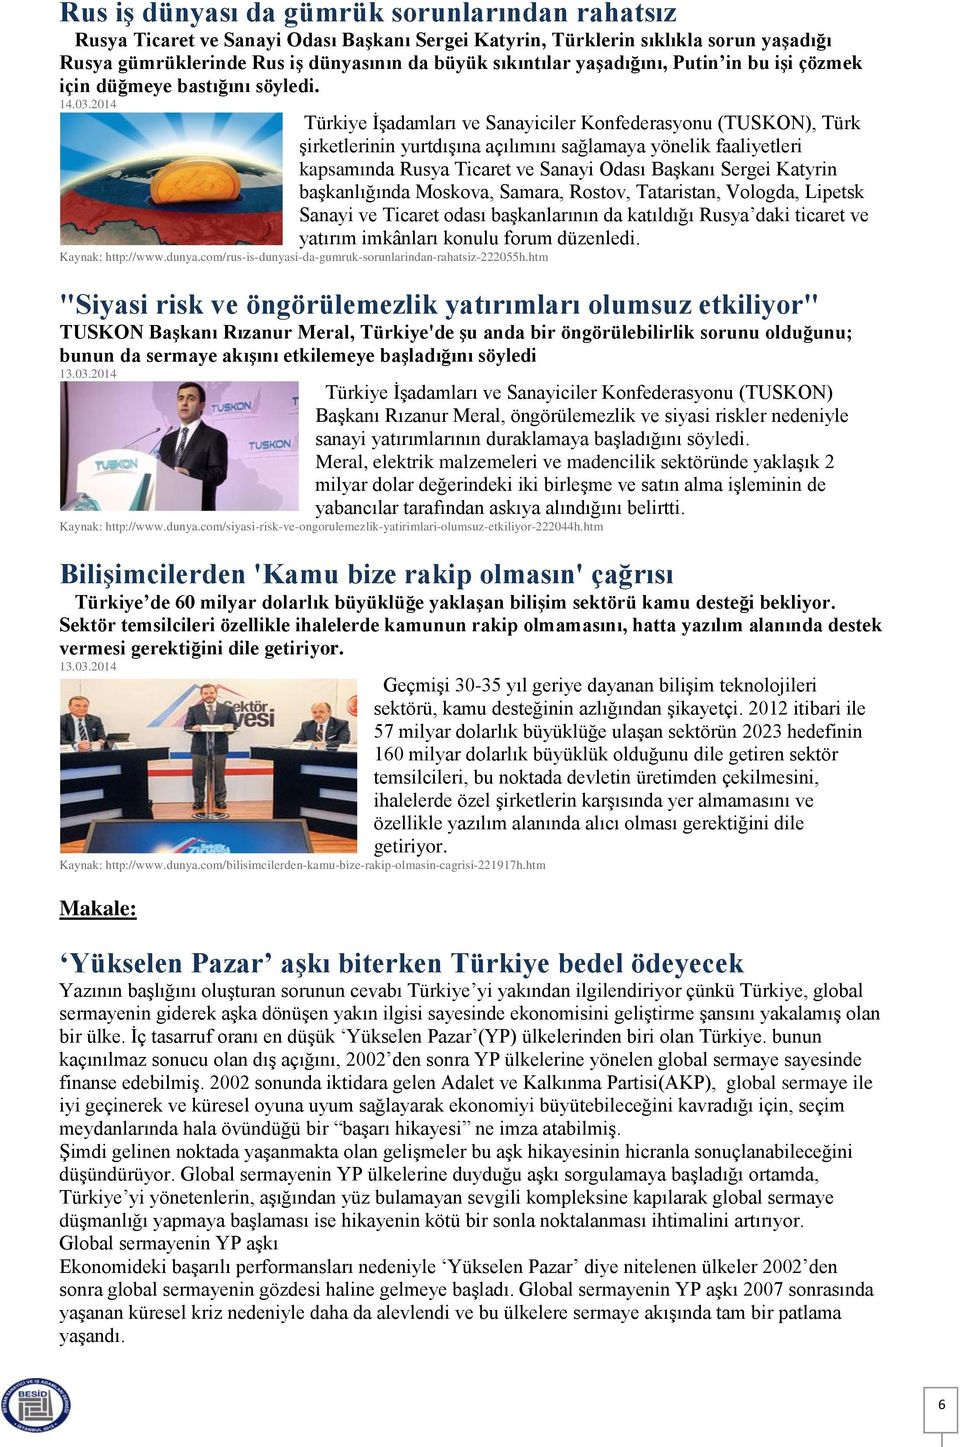 Türkiye İşadamları ve Sanayiciler Konfederasyonu (TUSKON), Türk şirketlerinin yurtdışına açılımını sağlamaya yönelik faaliyetleri kapsamında Rusya Ticaret ve Sanayi Odası Başkanı Sergei Katyrin